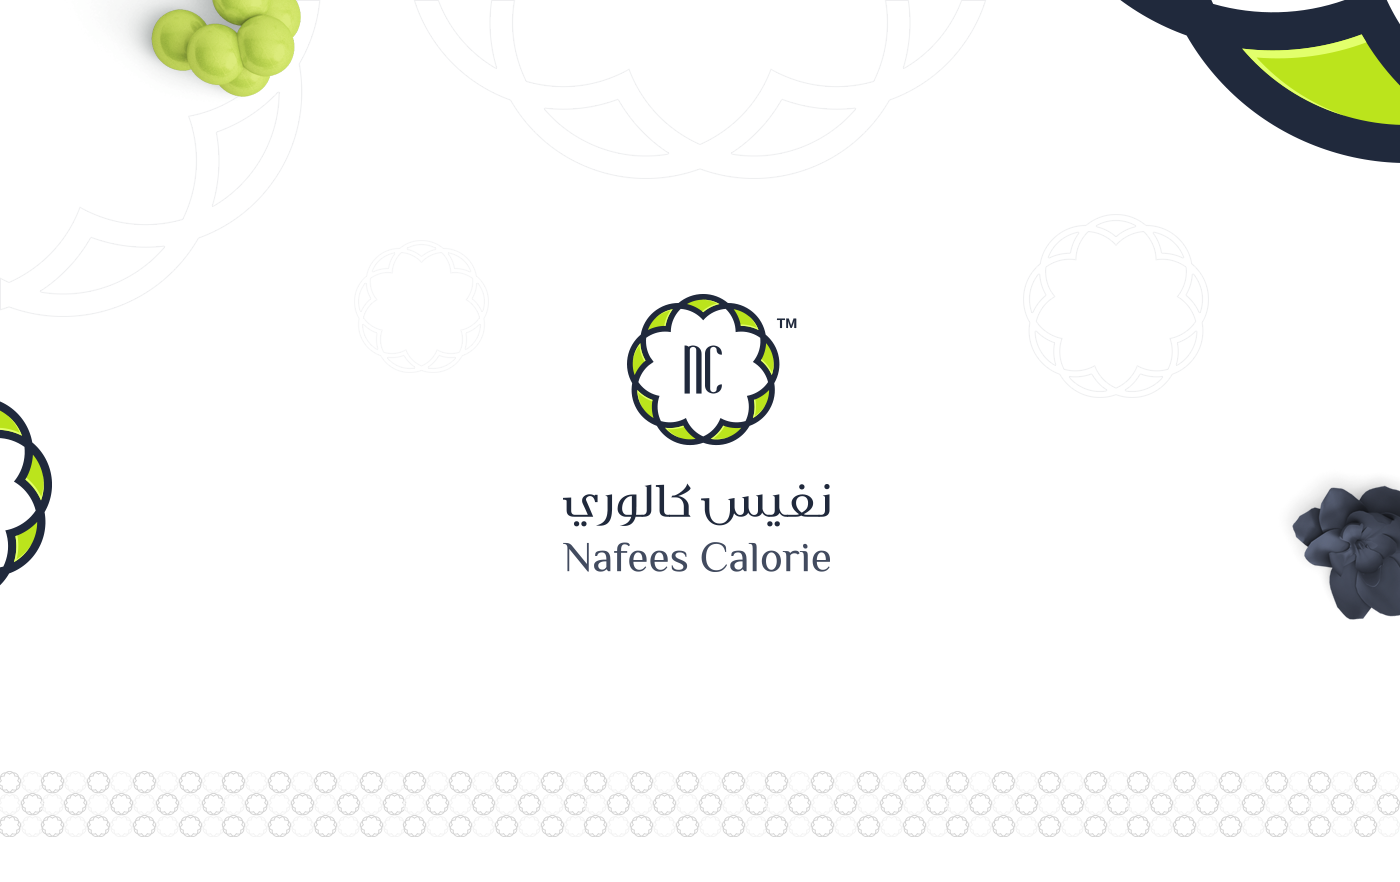 Nafees Calorie Branding